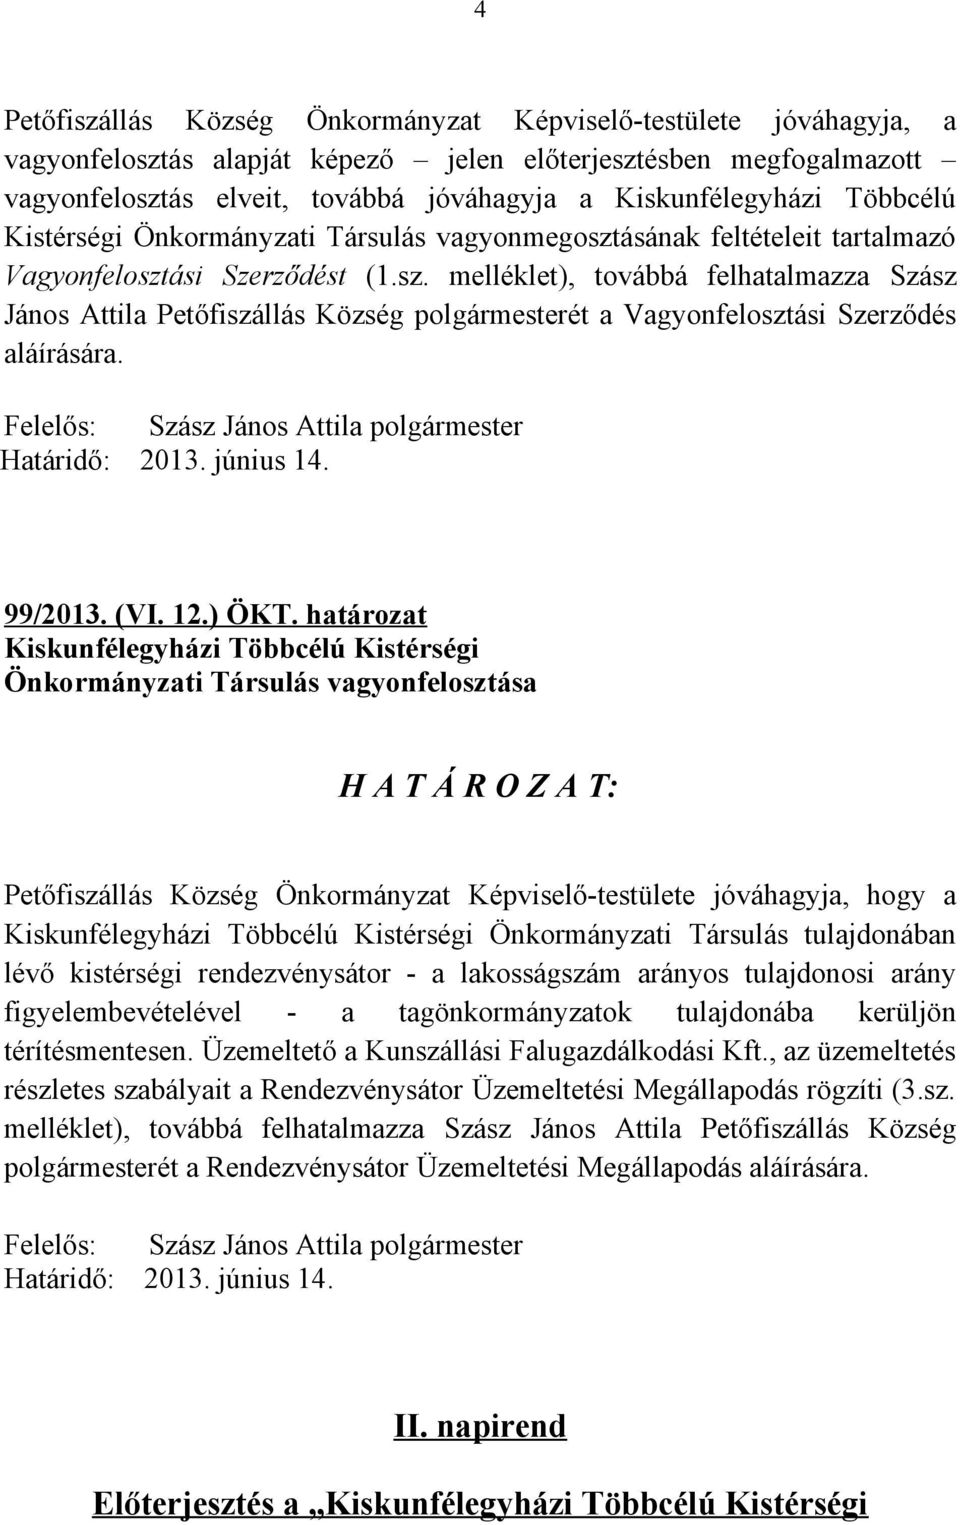 ásának feltételeit tartalmazó Vagyonfelosztási Szerződést (1.sz. melléklet), továbbá felhatalmazza Szász János Attila Petőfiszállás Község polgármesterét a Vagyonfelosztási Szerződés aláírására.